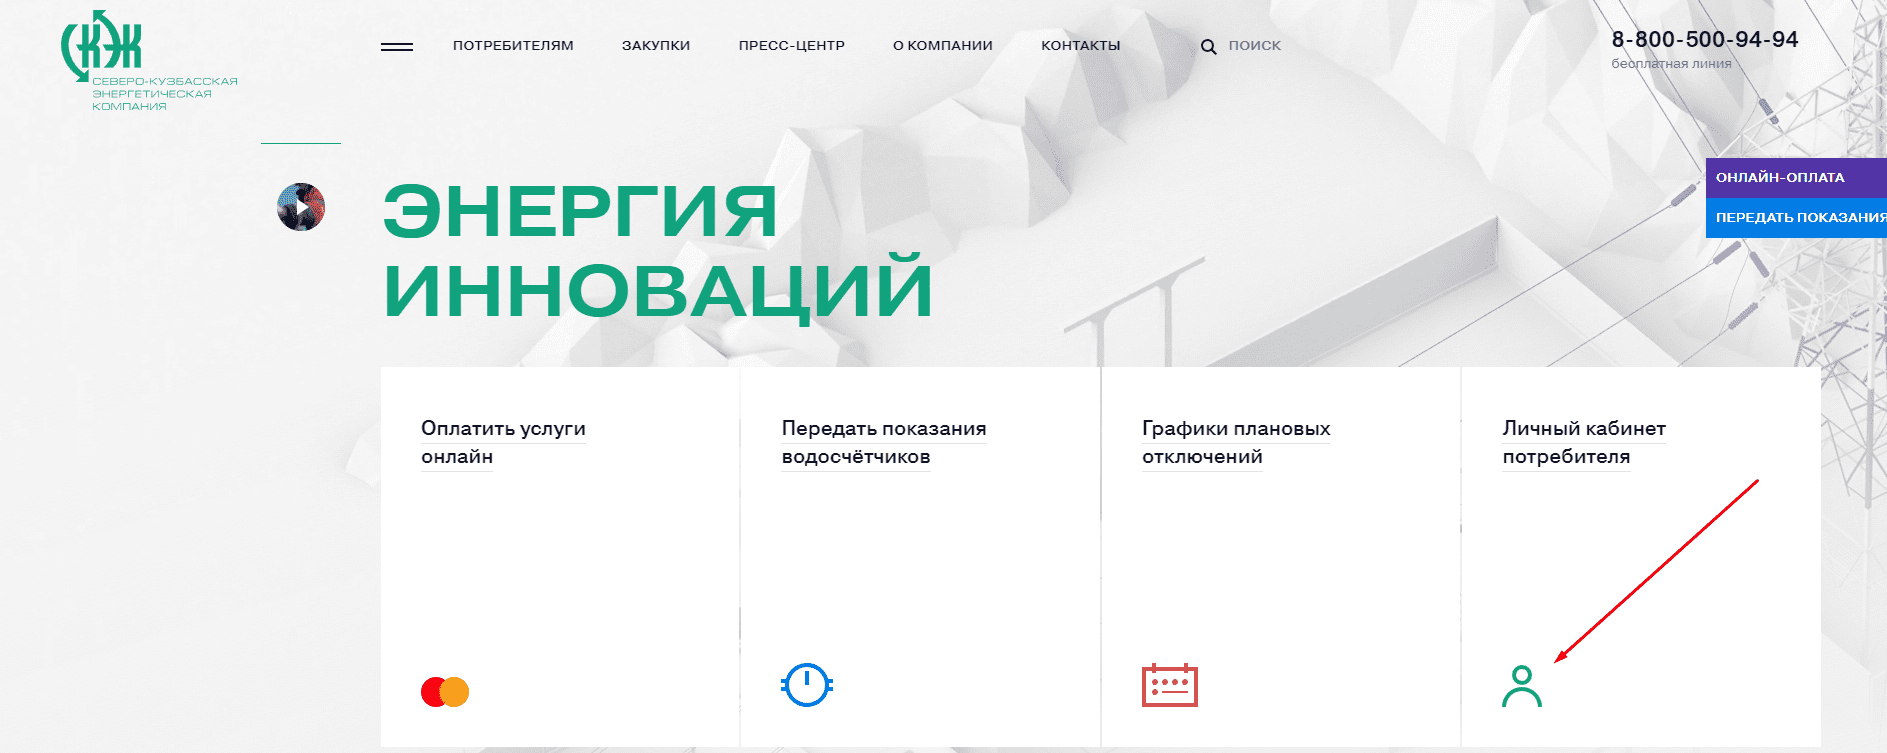 СКЭК (skek.ru) Северо-Кузбасская энергетическая компания